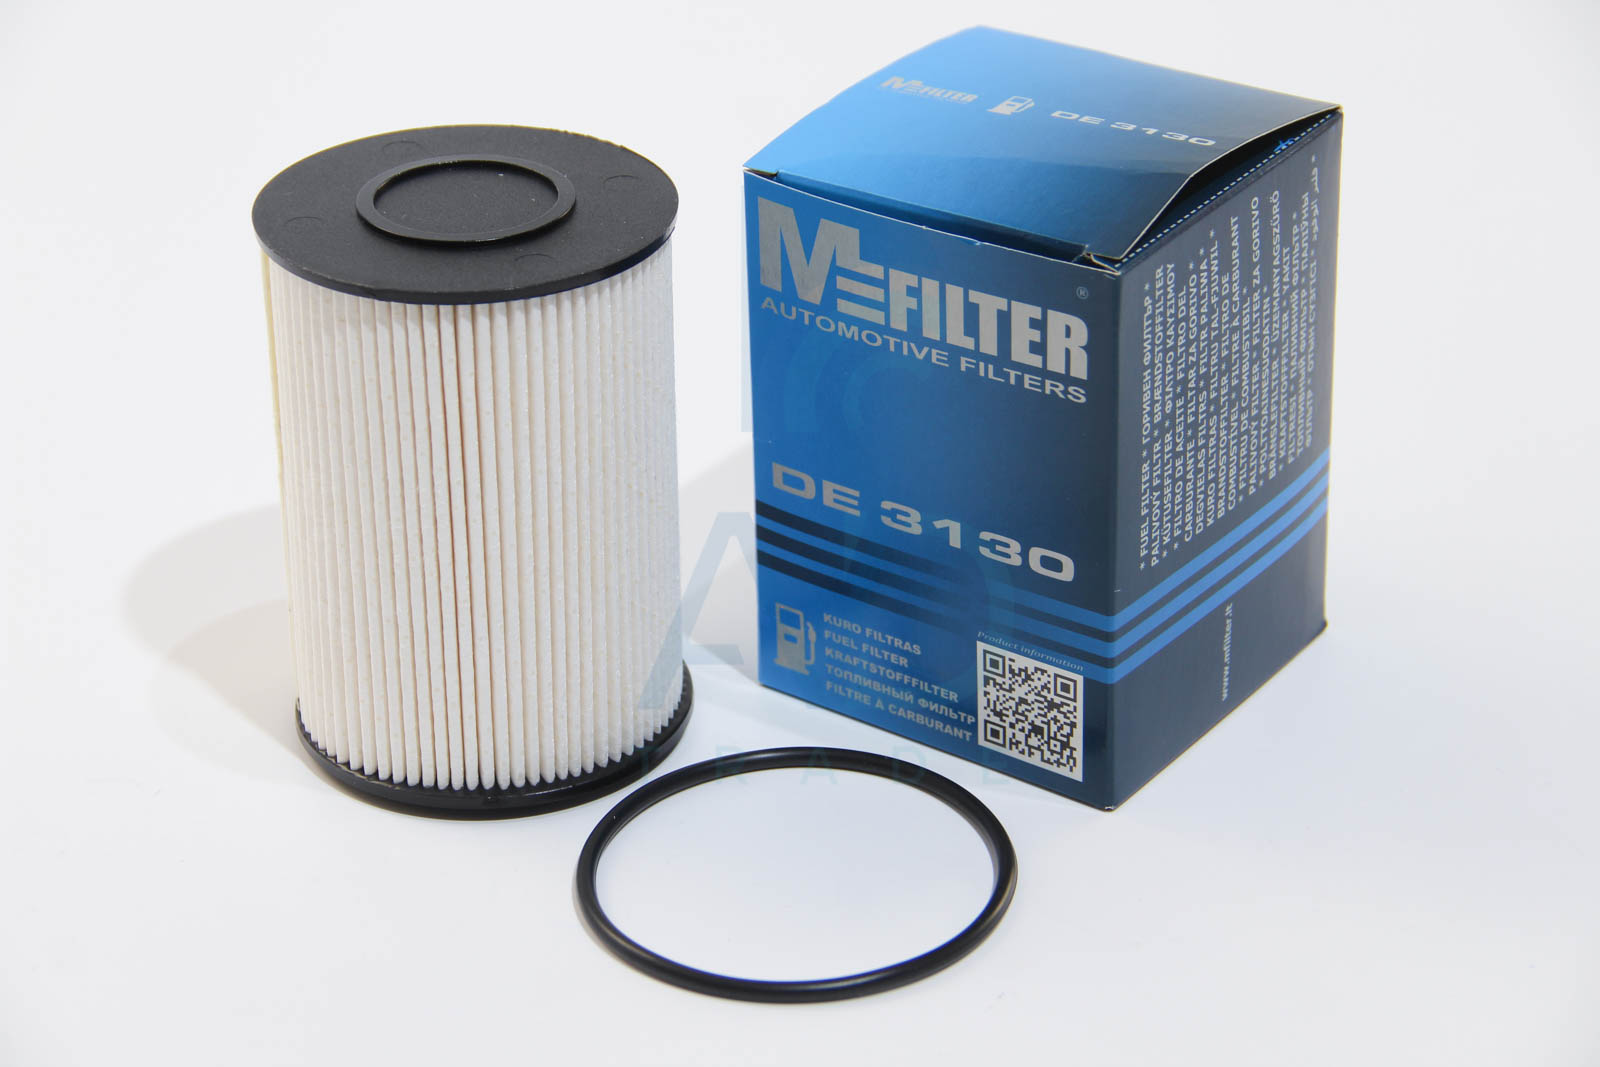 Фильтр топливный SKODA  Octavia II(M-Filter) UFI арт. DE 3130